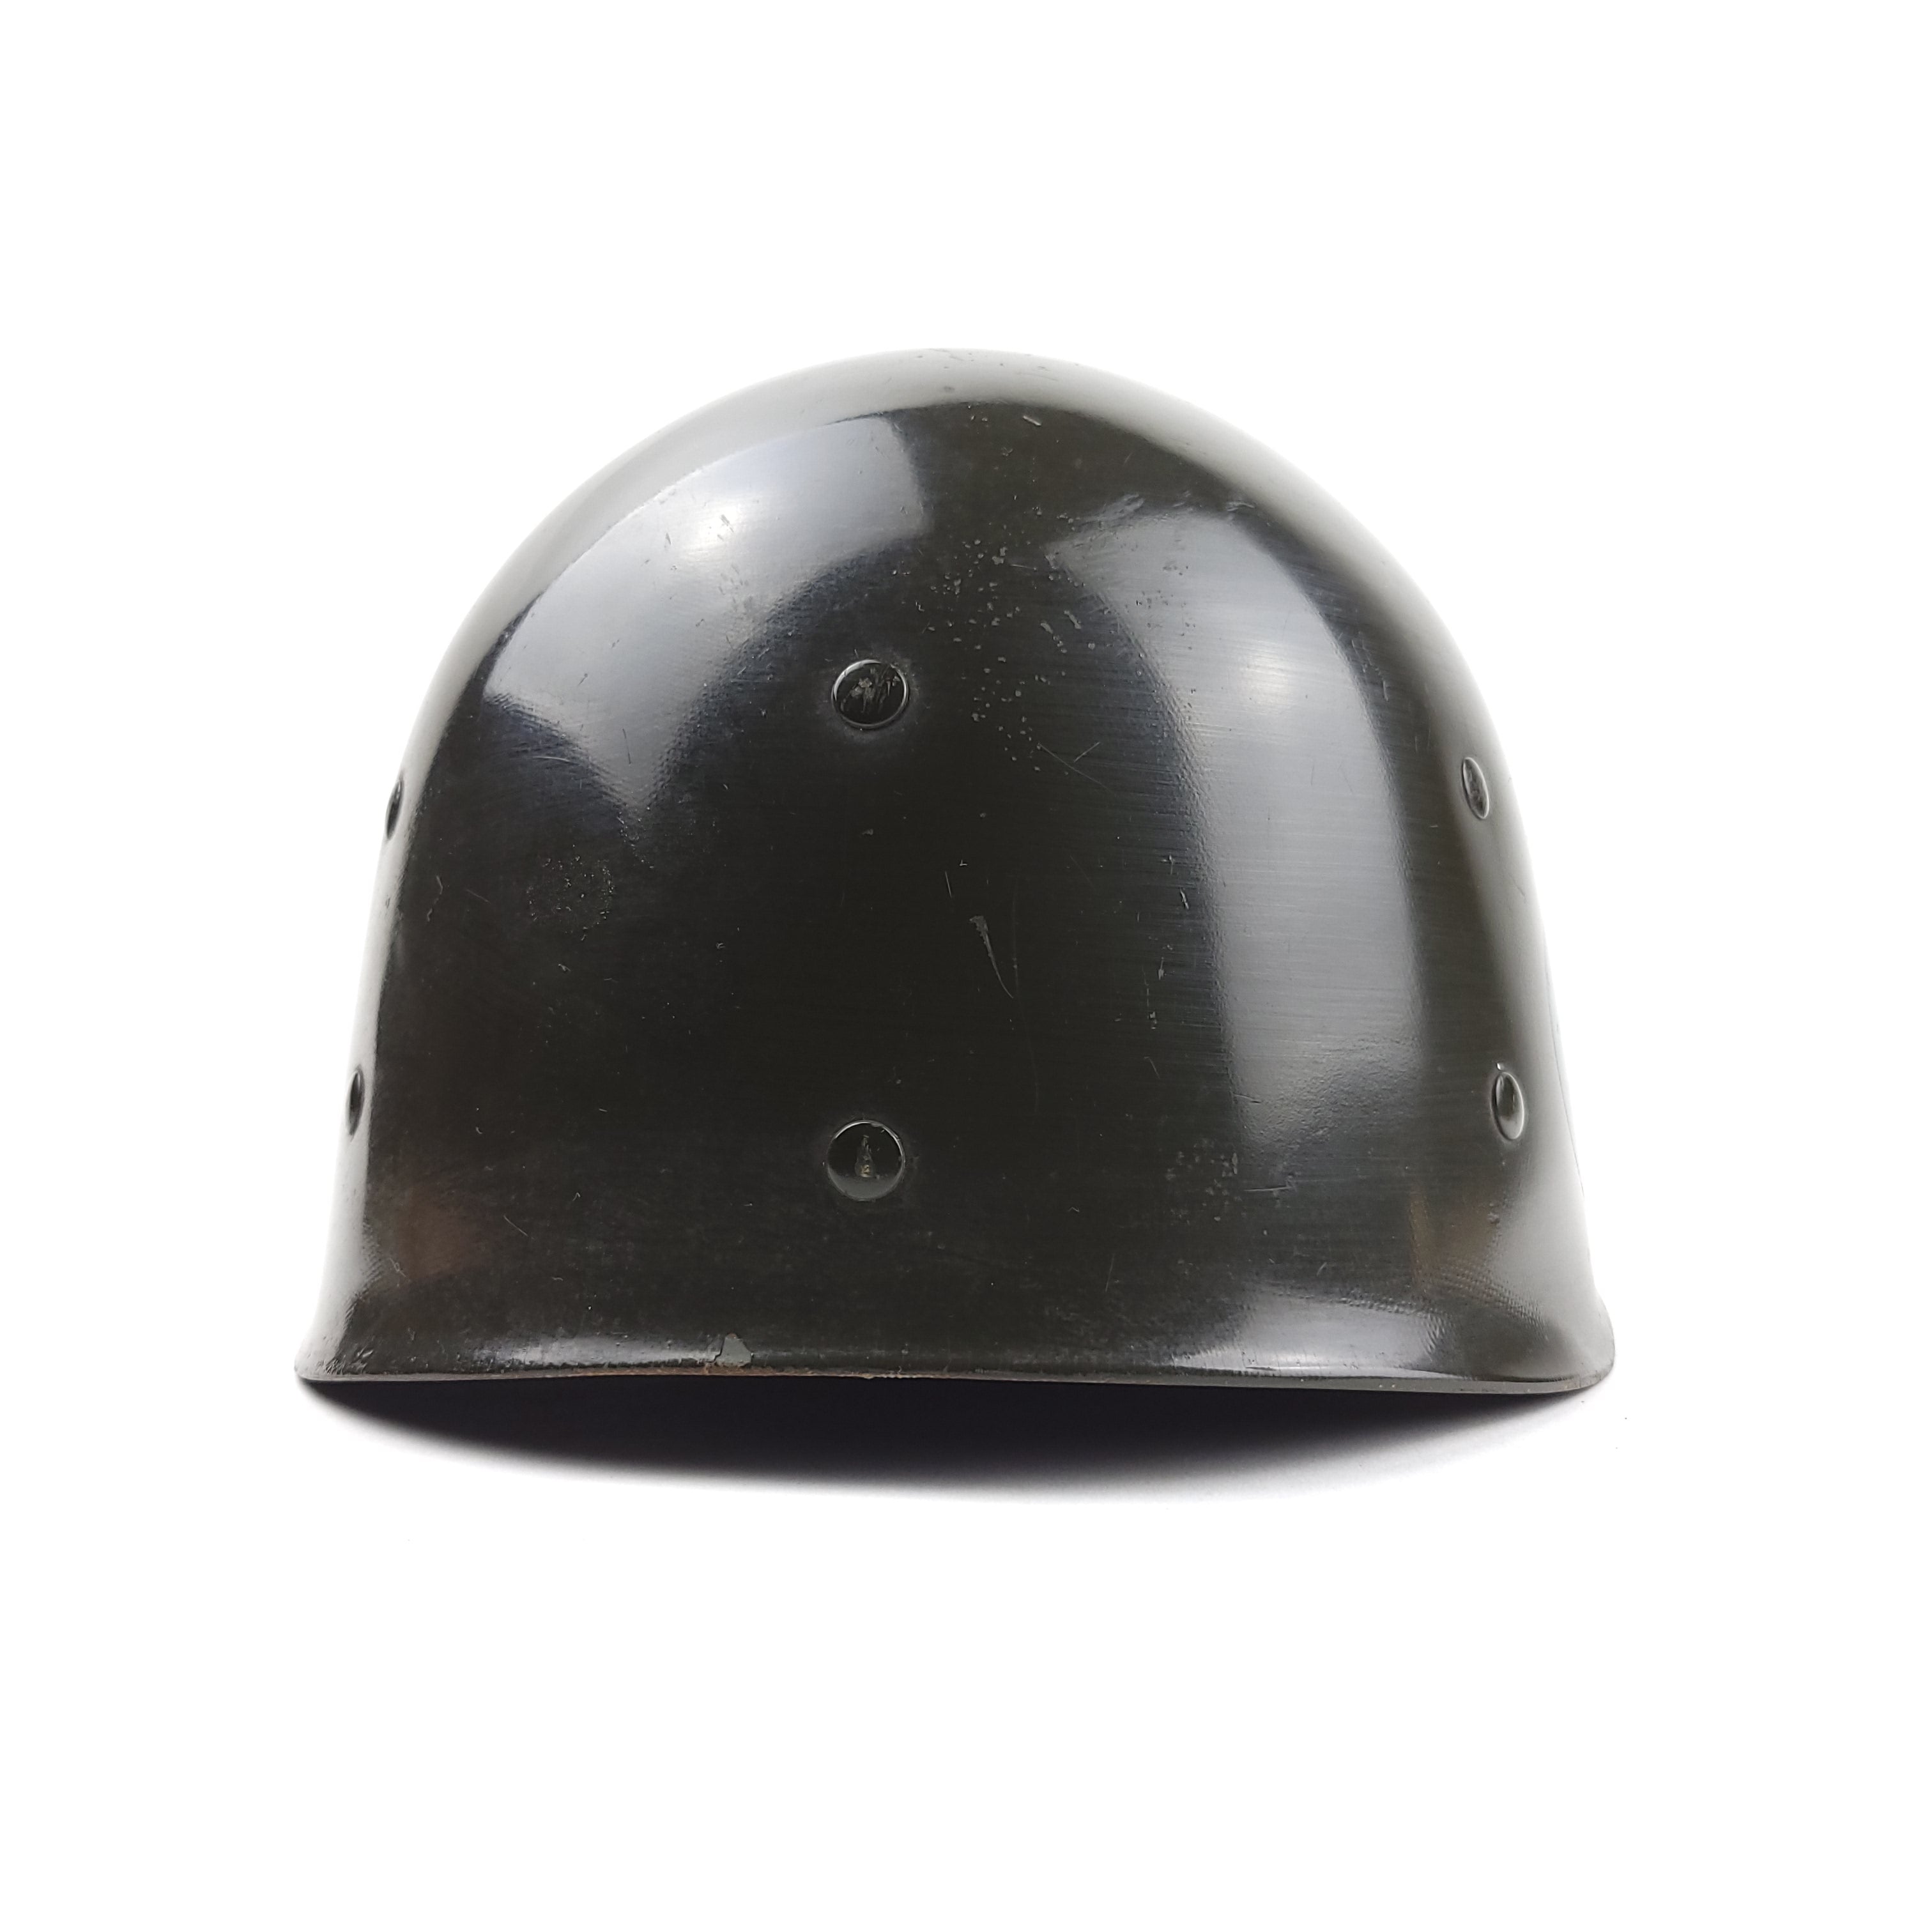 M1 Helmet Liner - Inland - Pacific Command Major Rank - Original